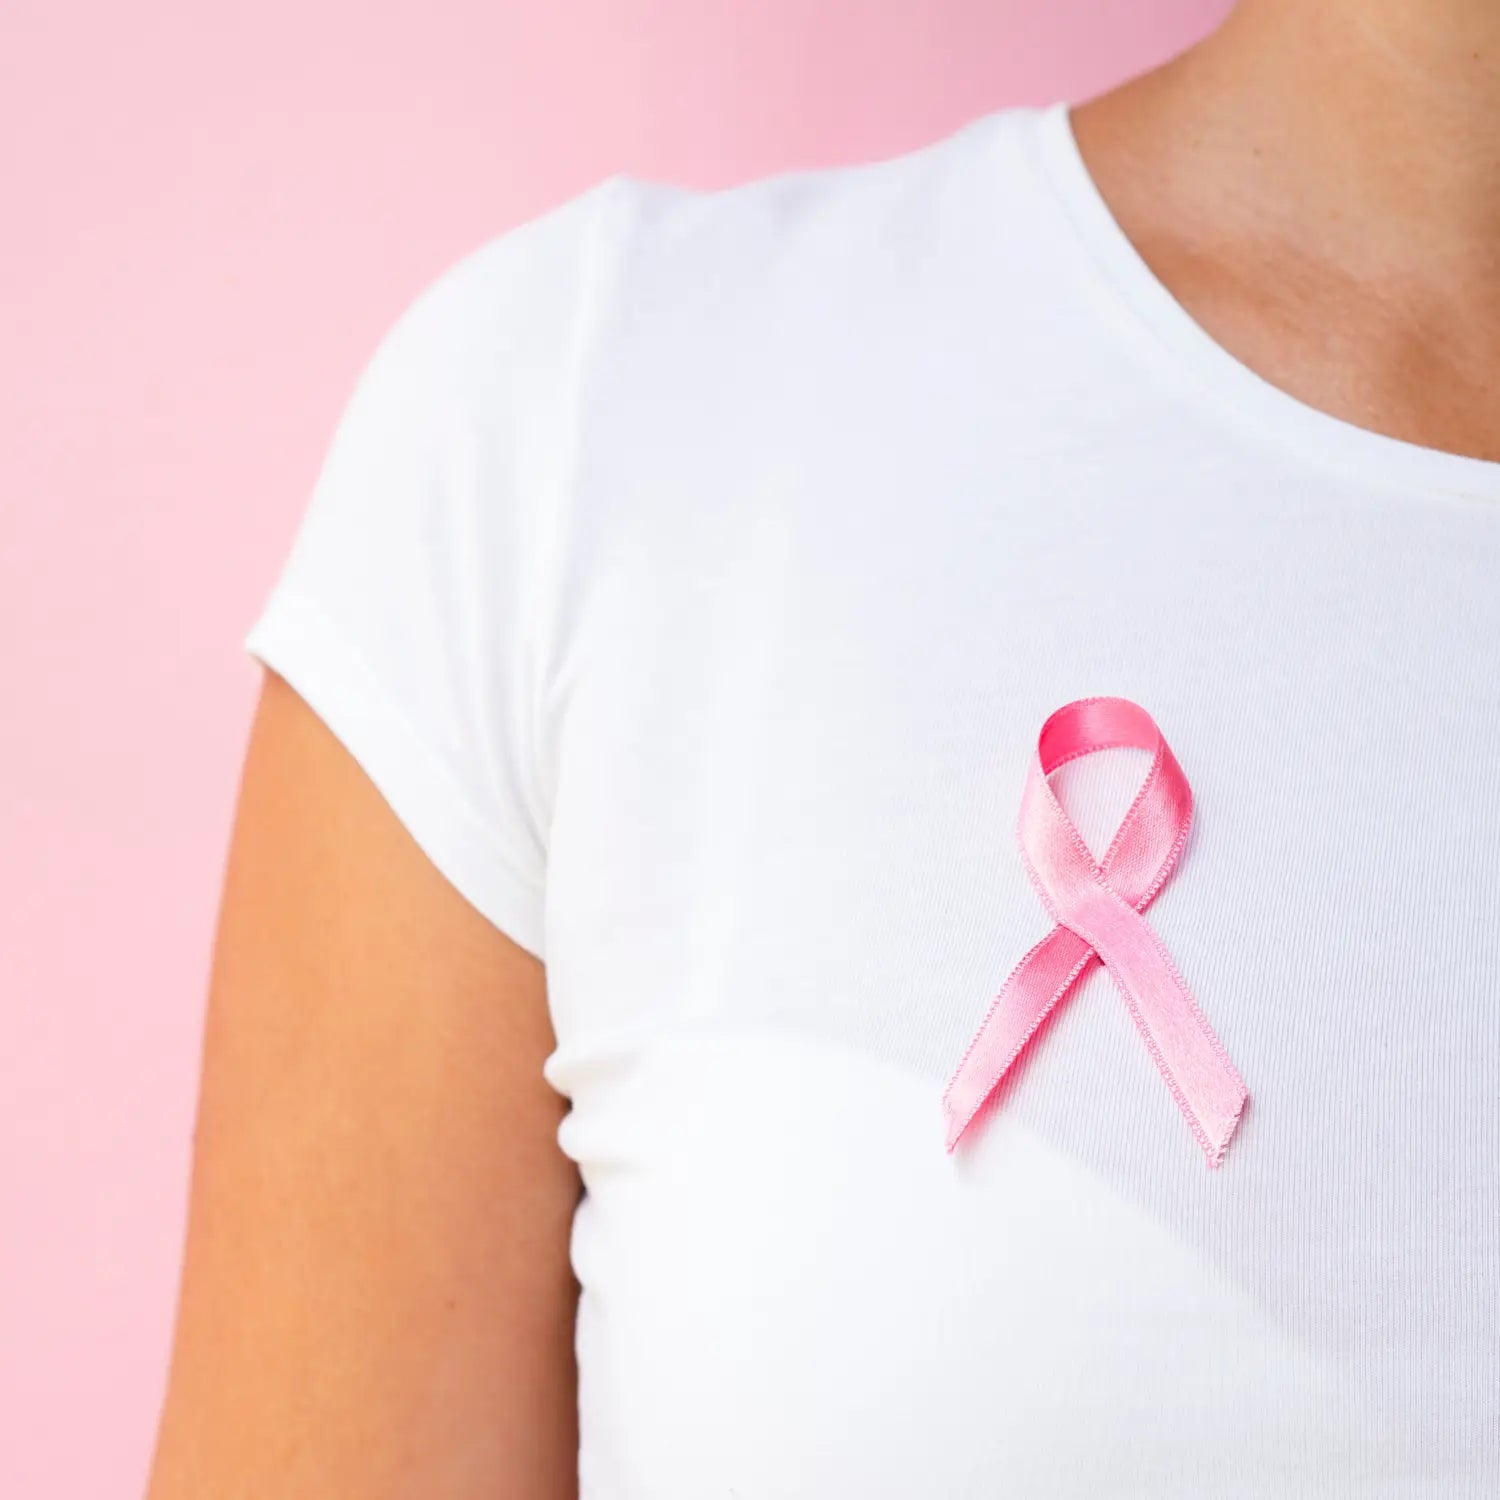 ¿Conoces los factores de riesgo que pueden aumentar la probabilidad de desarrollar cáncer de mama?